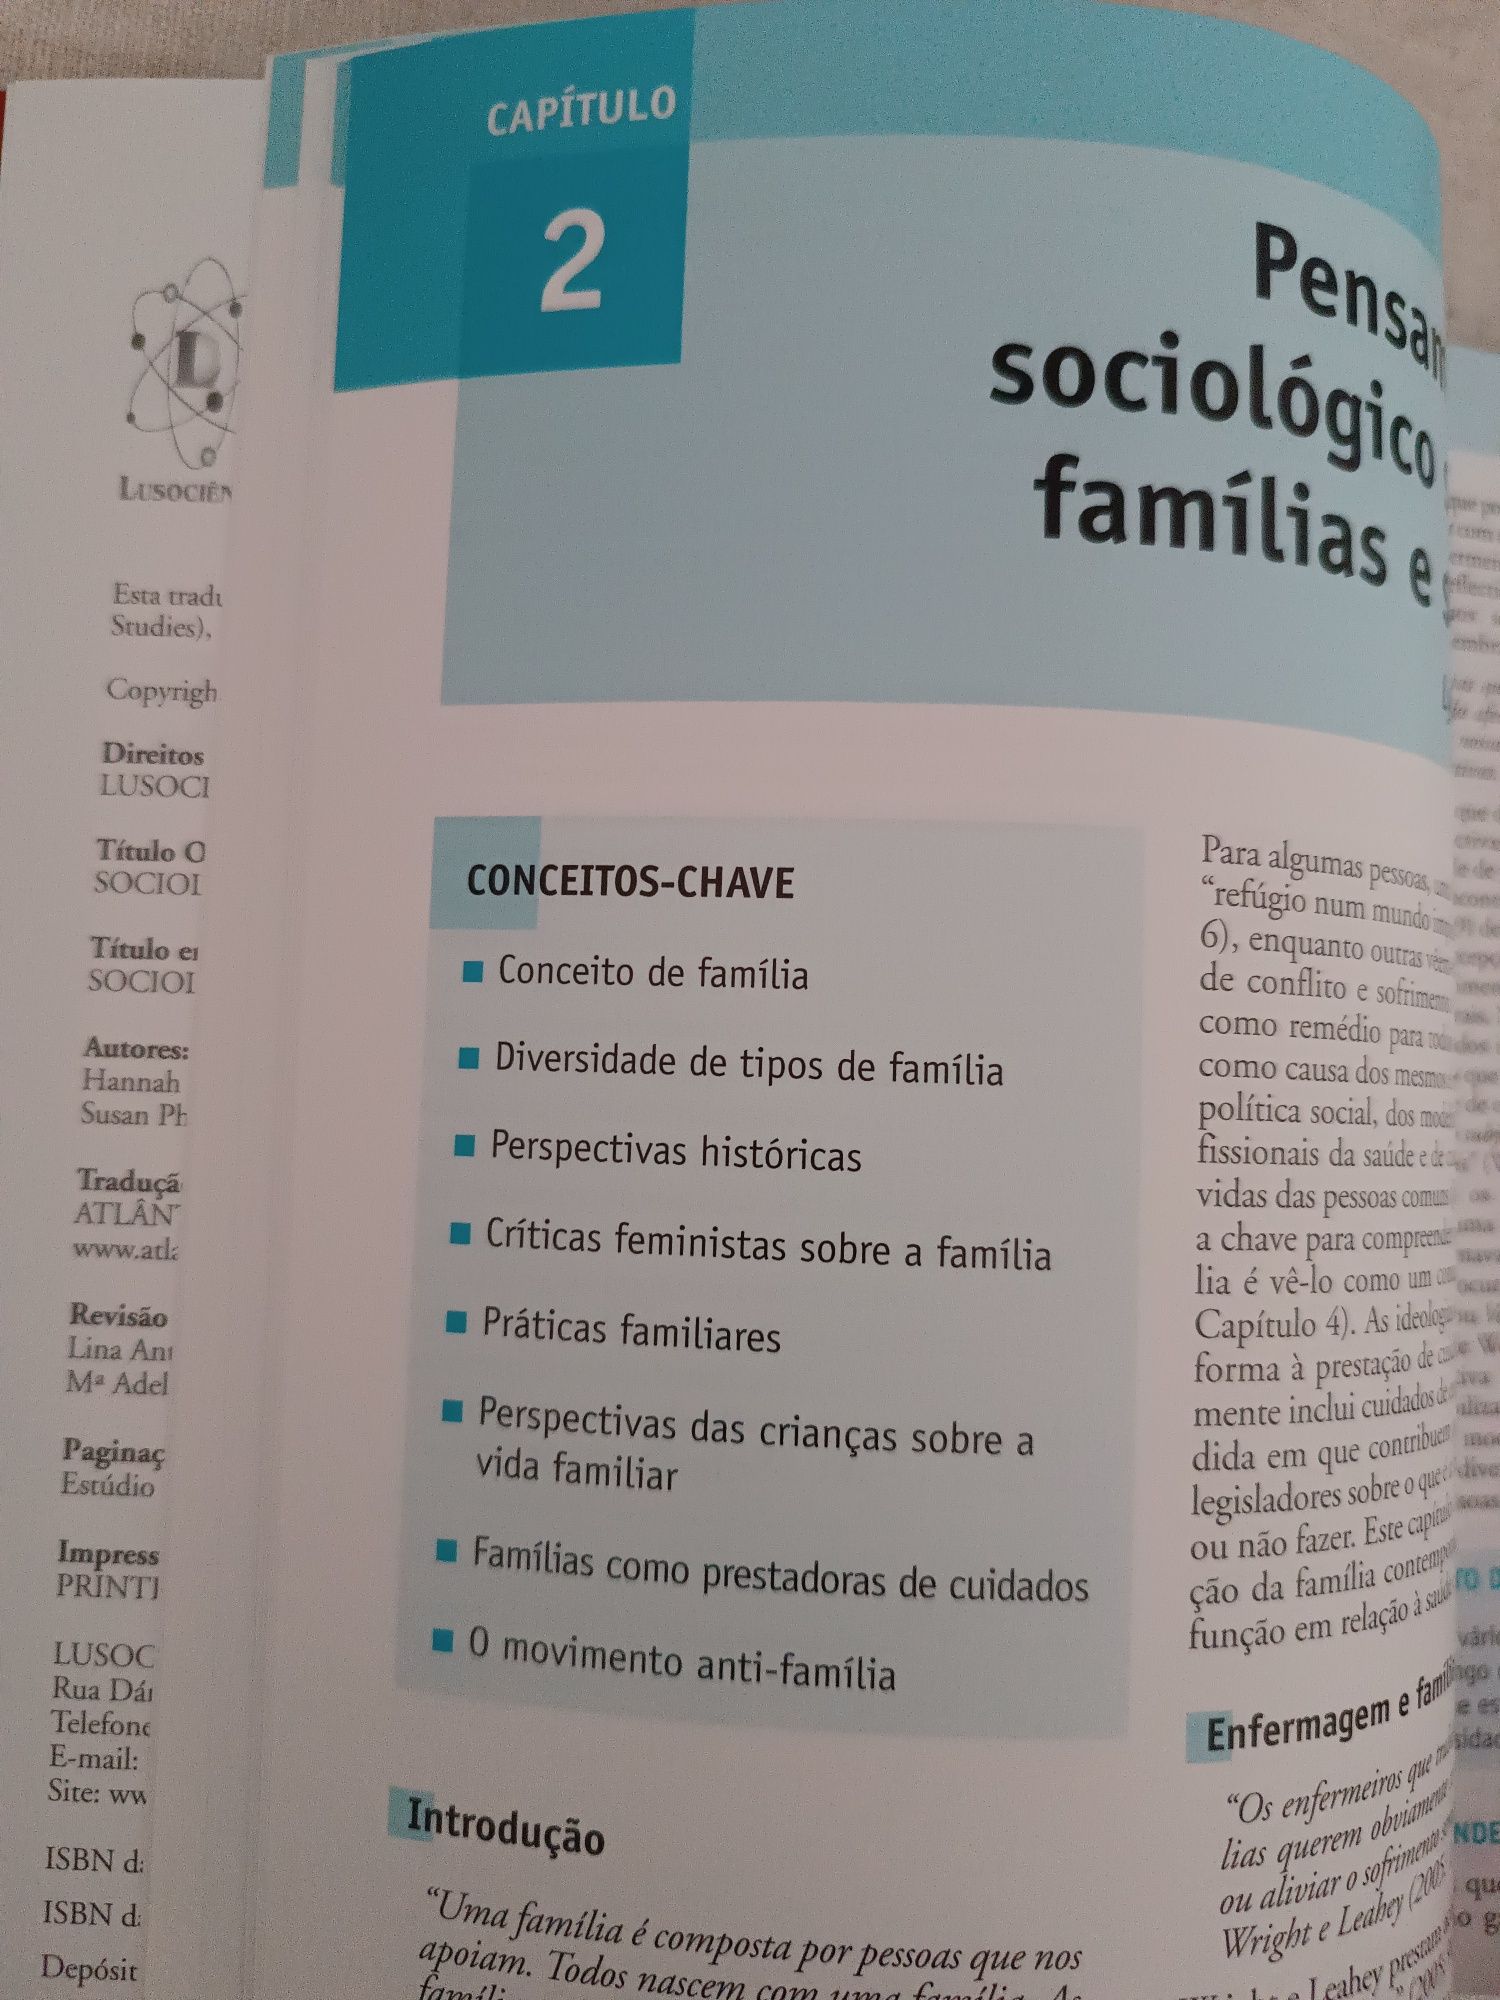 Livro "Sociologia em Enfermagem e Cuidados de Saúde"